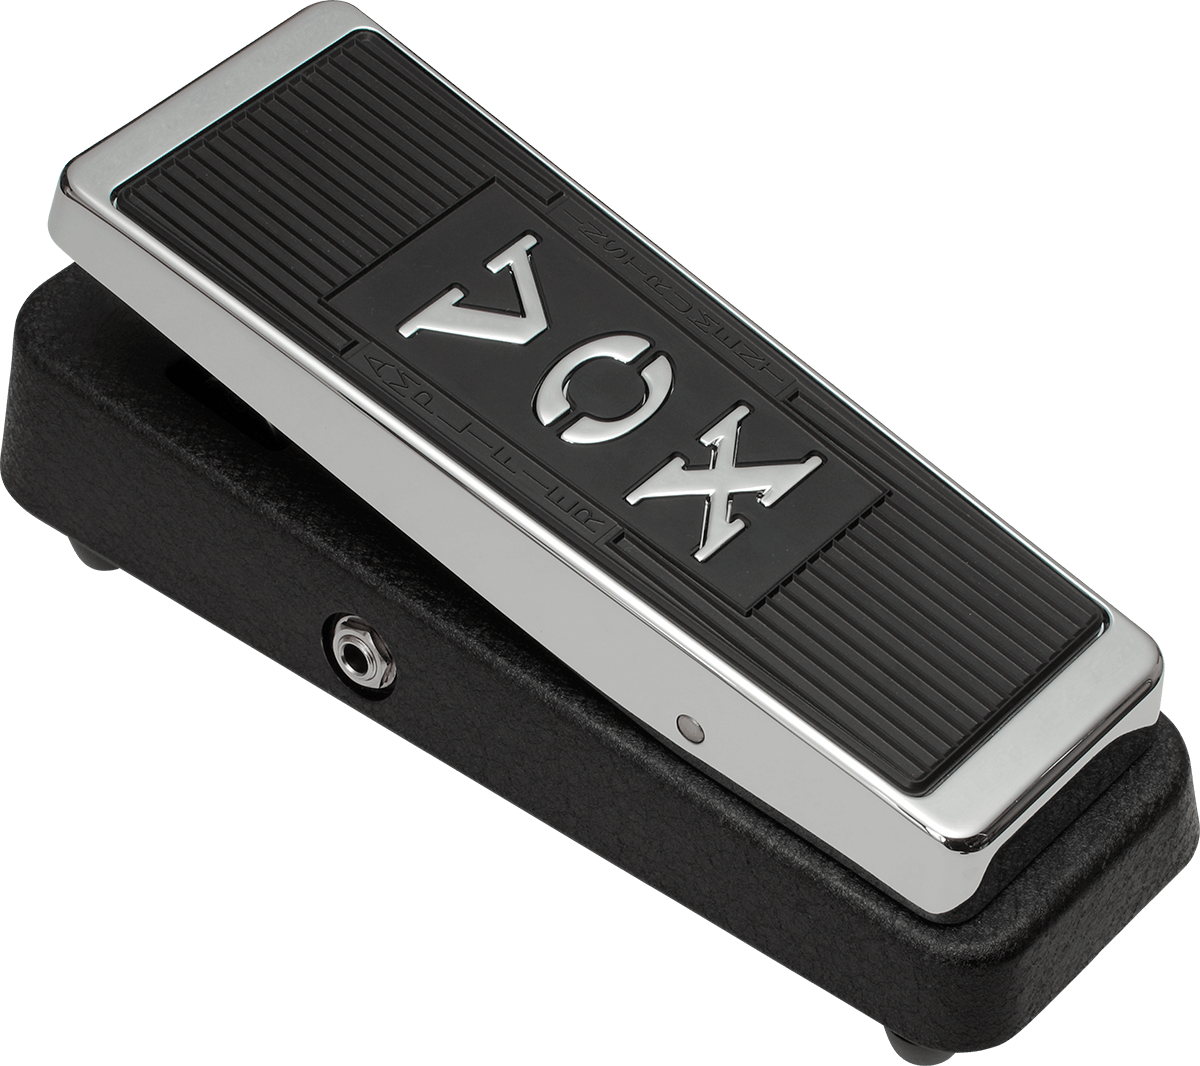 Vox Vrm-1 Real Mccoy Wah Pedal - Wah/Filter Effektpedal - Variation 3